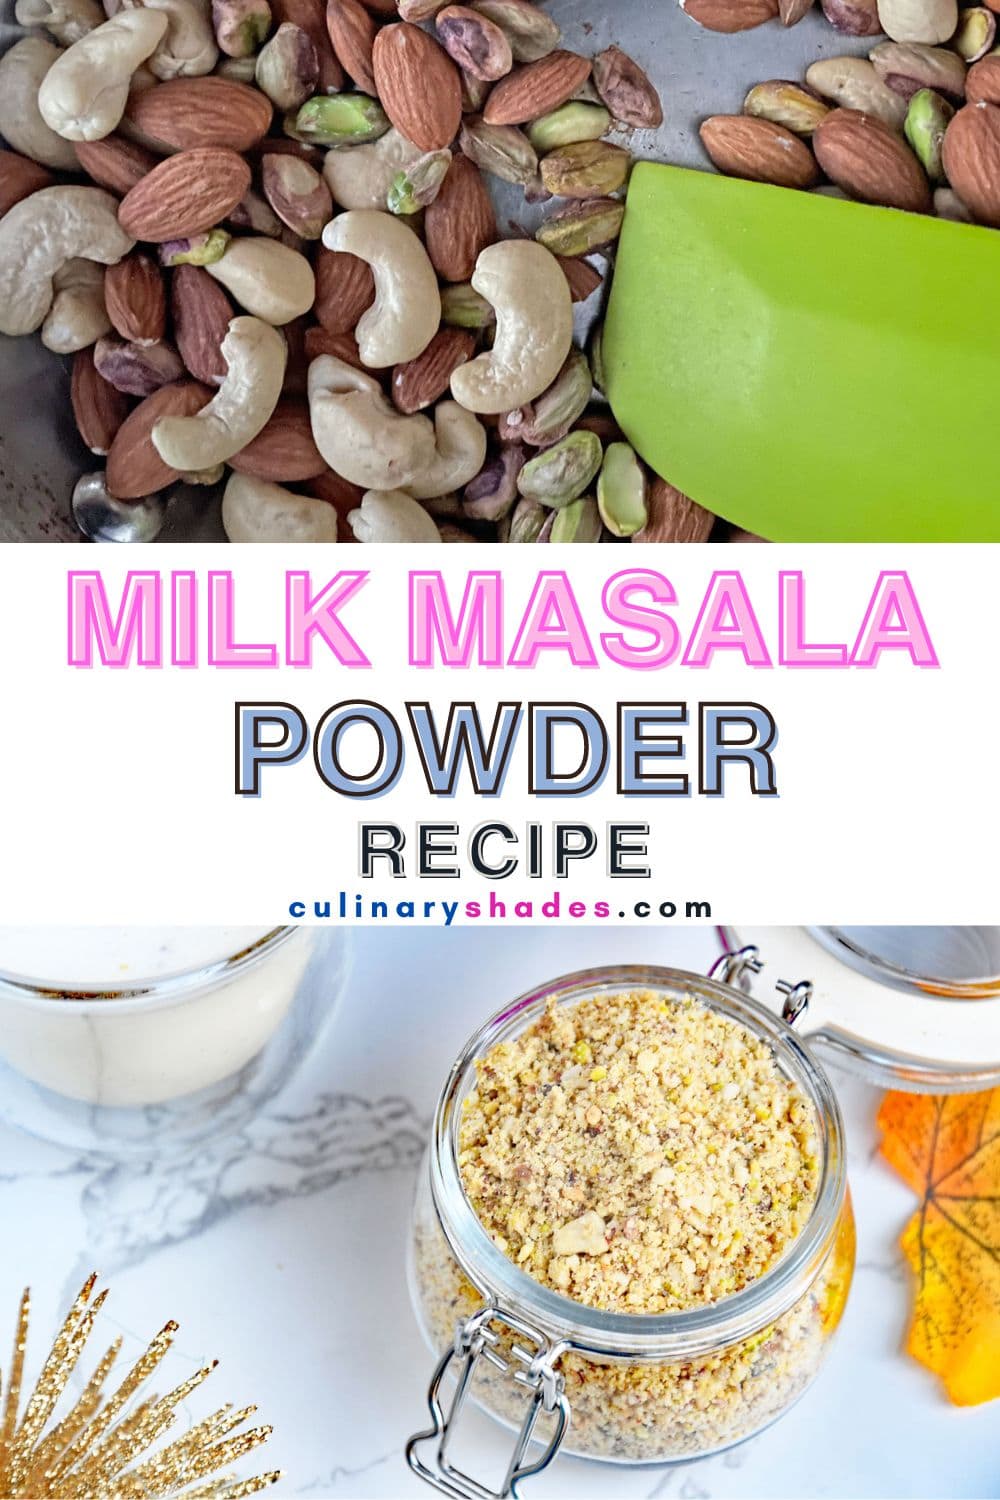 Milk masala powder in a jar.